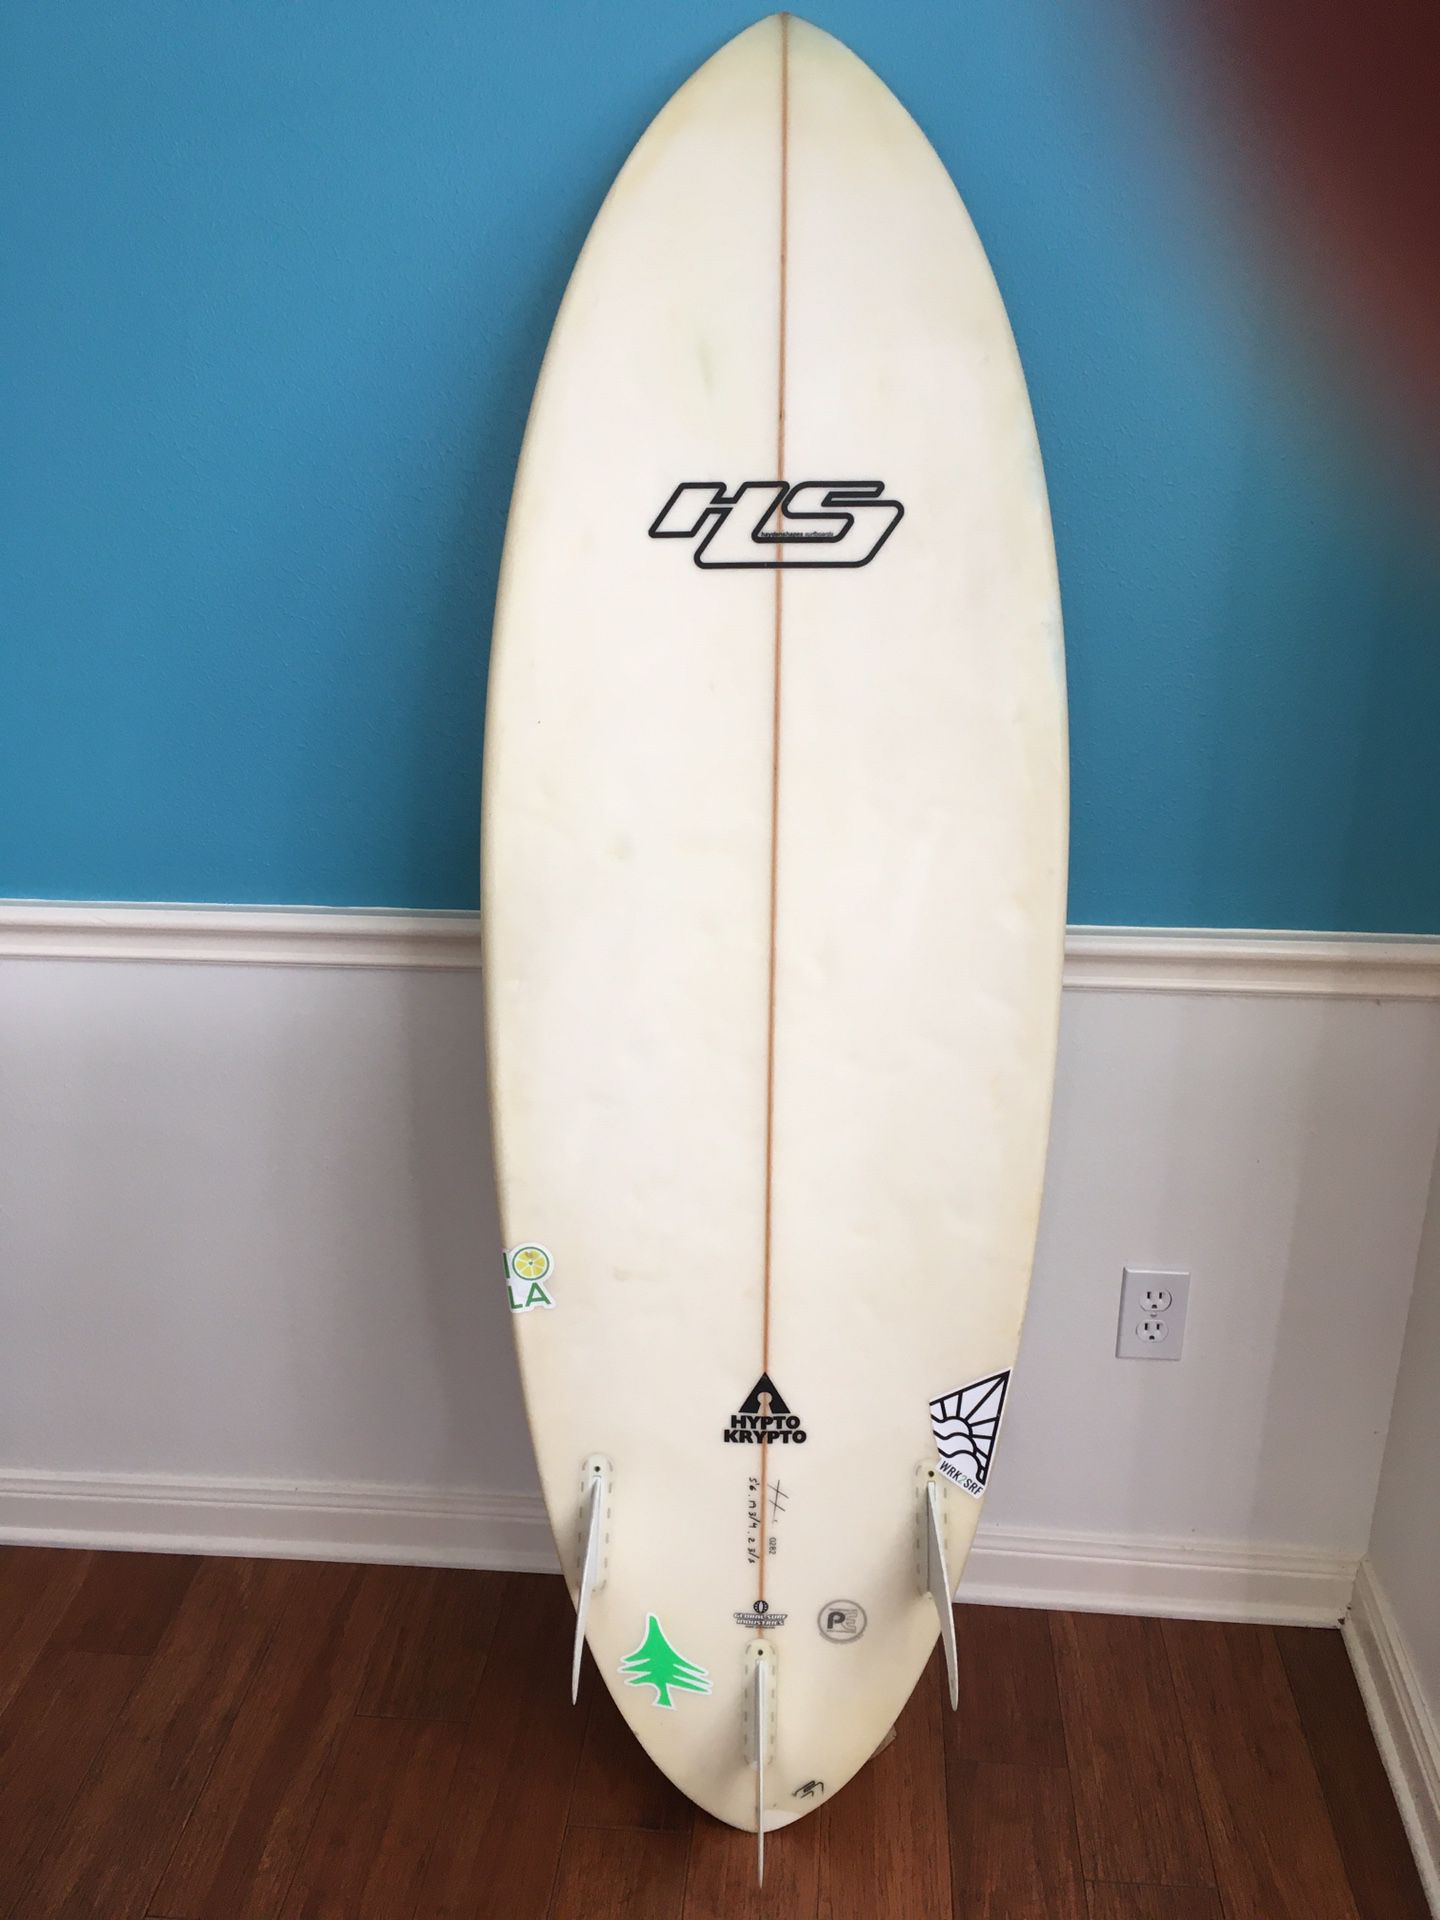 5’6” Hayden Shapes Hypto Krypto surfboard.